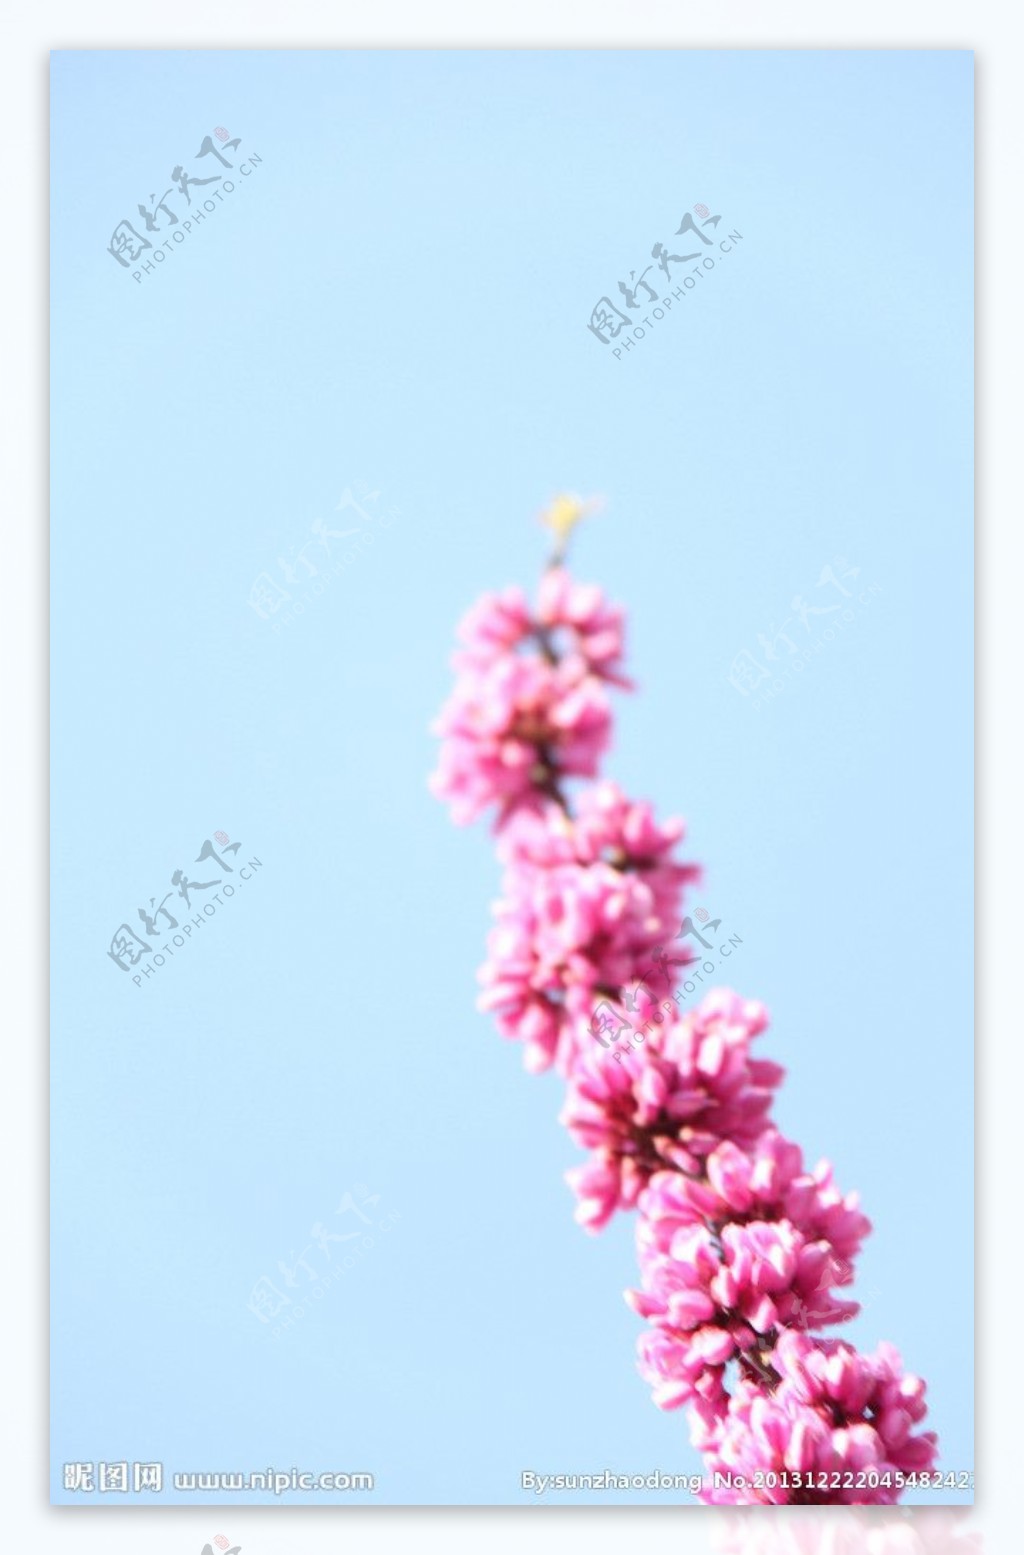 一枝花和蓝天紫荆花图片